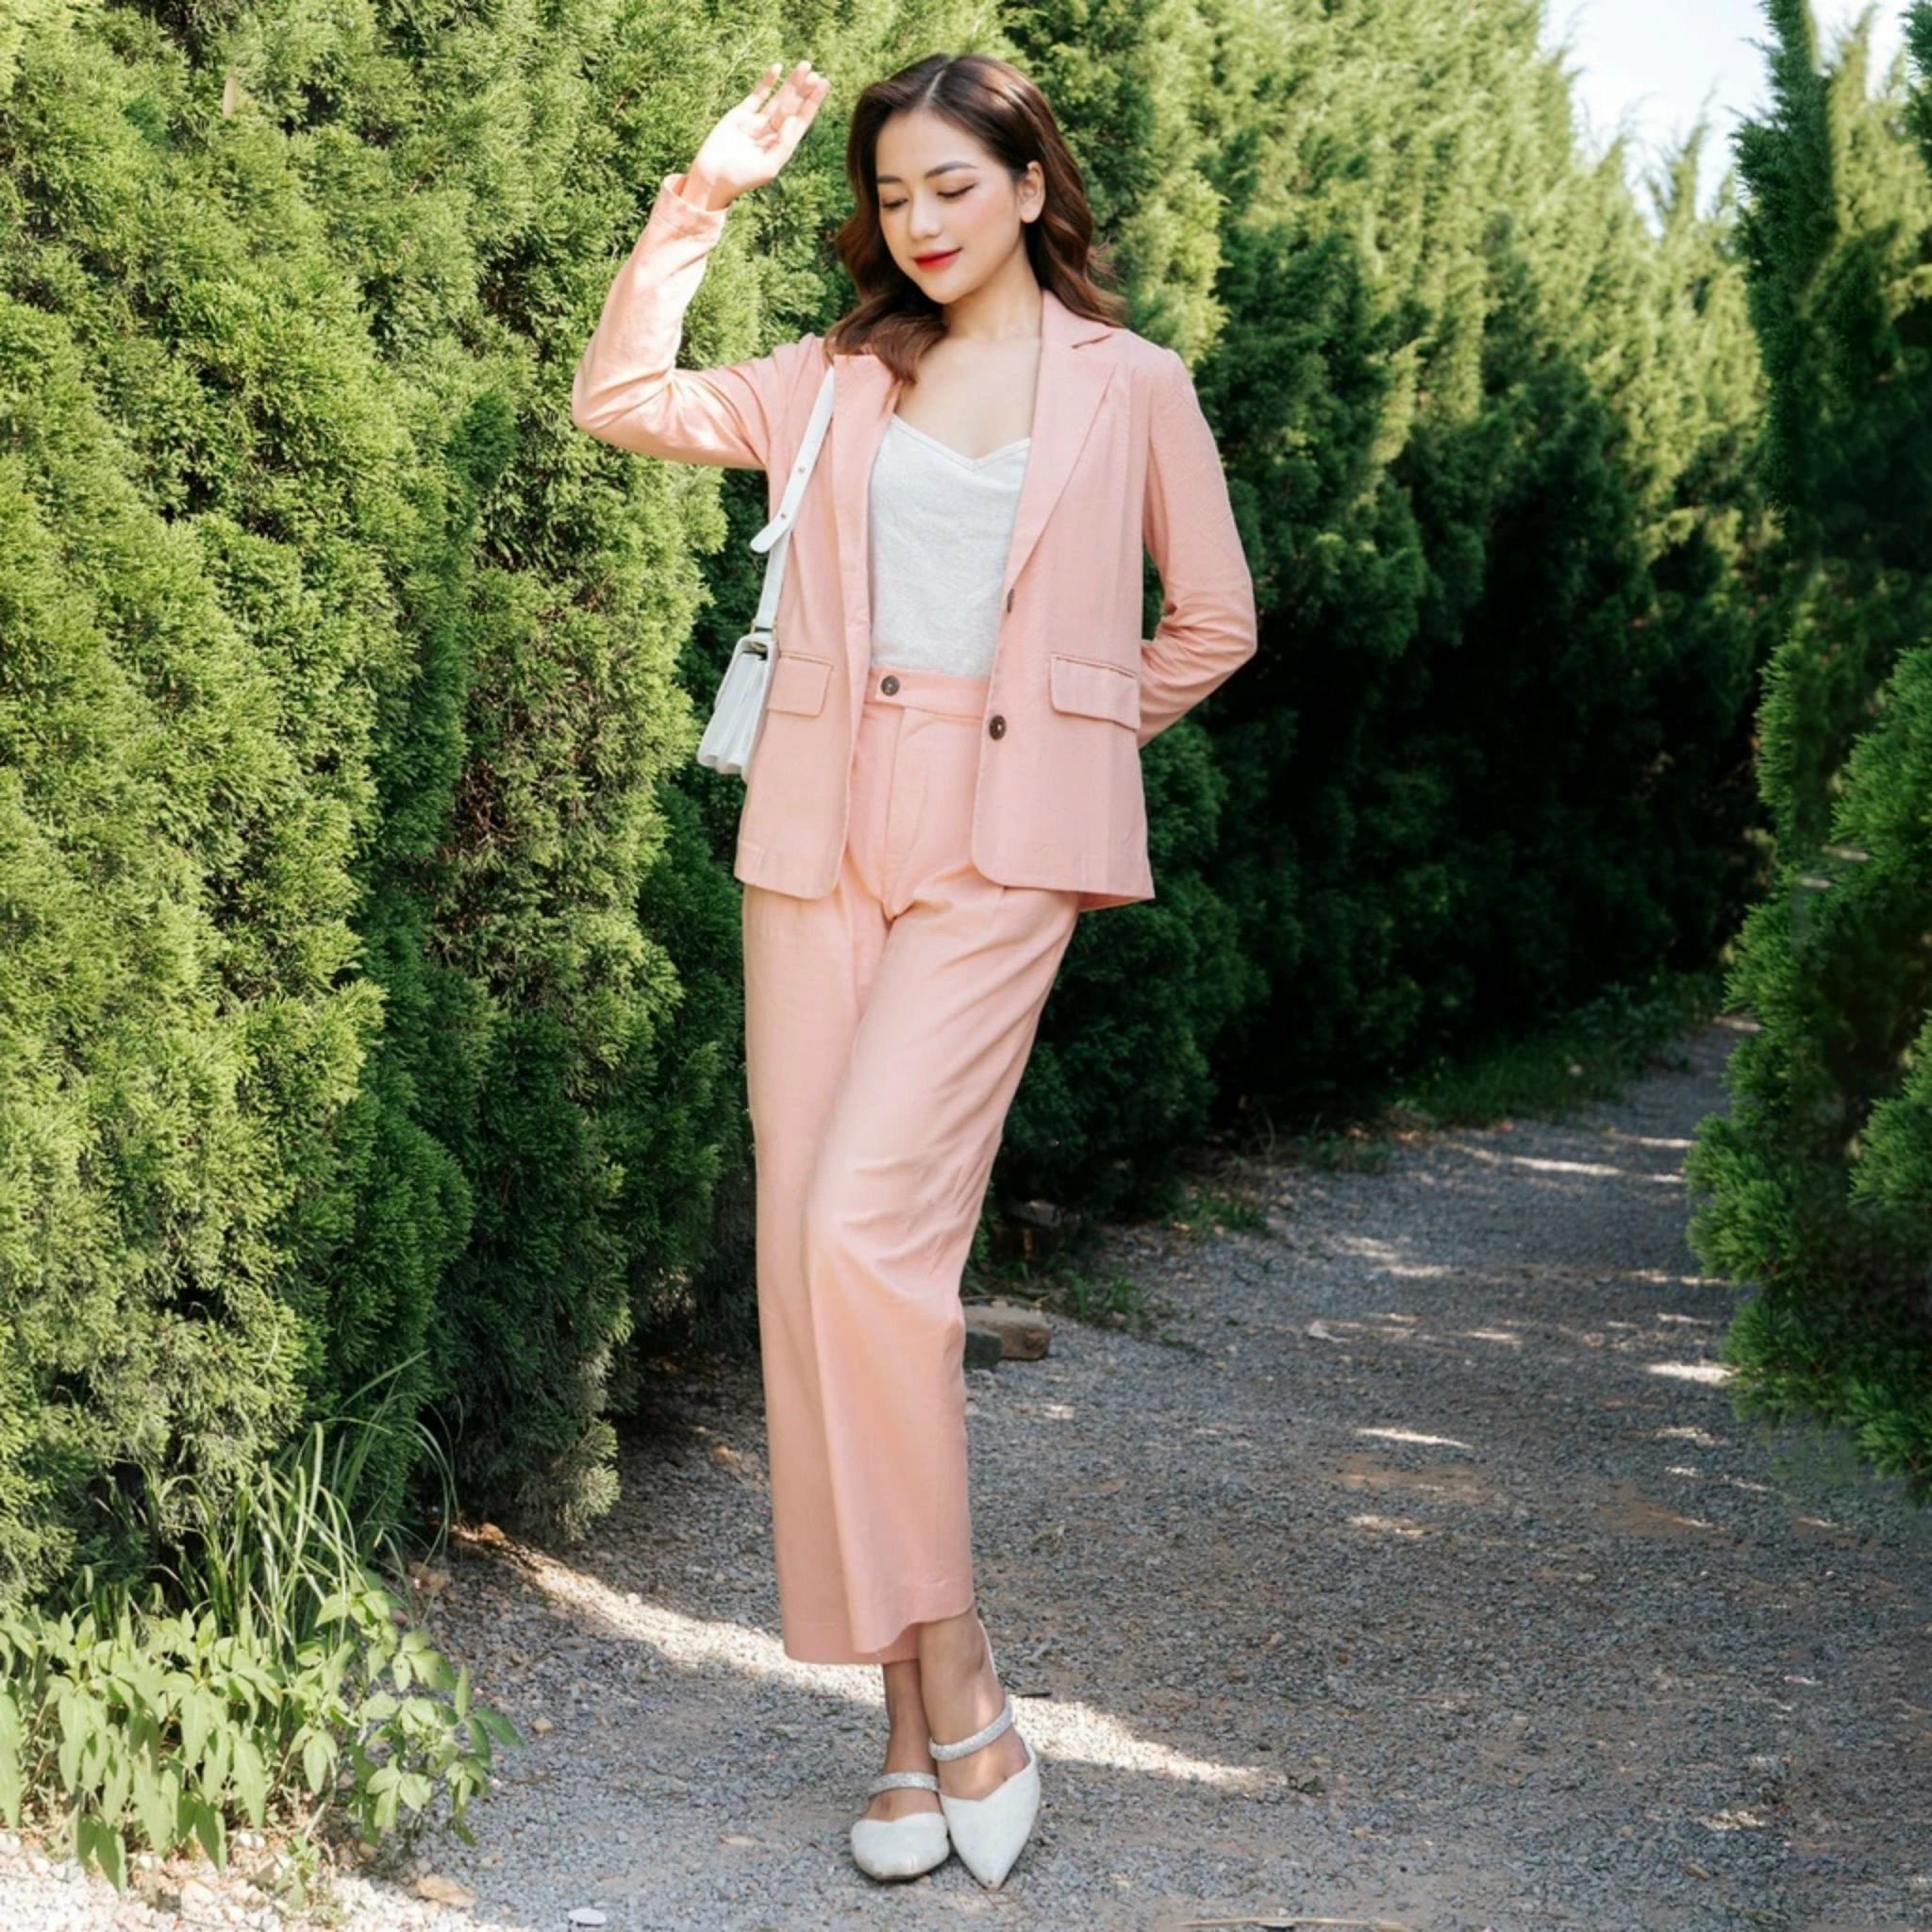 Bộ vest blazer nữ màu hồng nhẹ nhàng phong cách vintage Hàn Quốc, chất linen mềm mát Đũi Việt